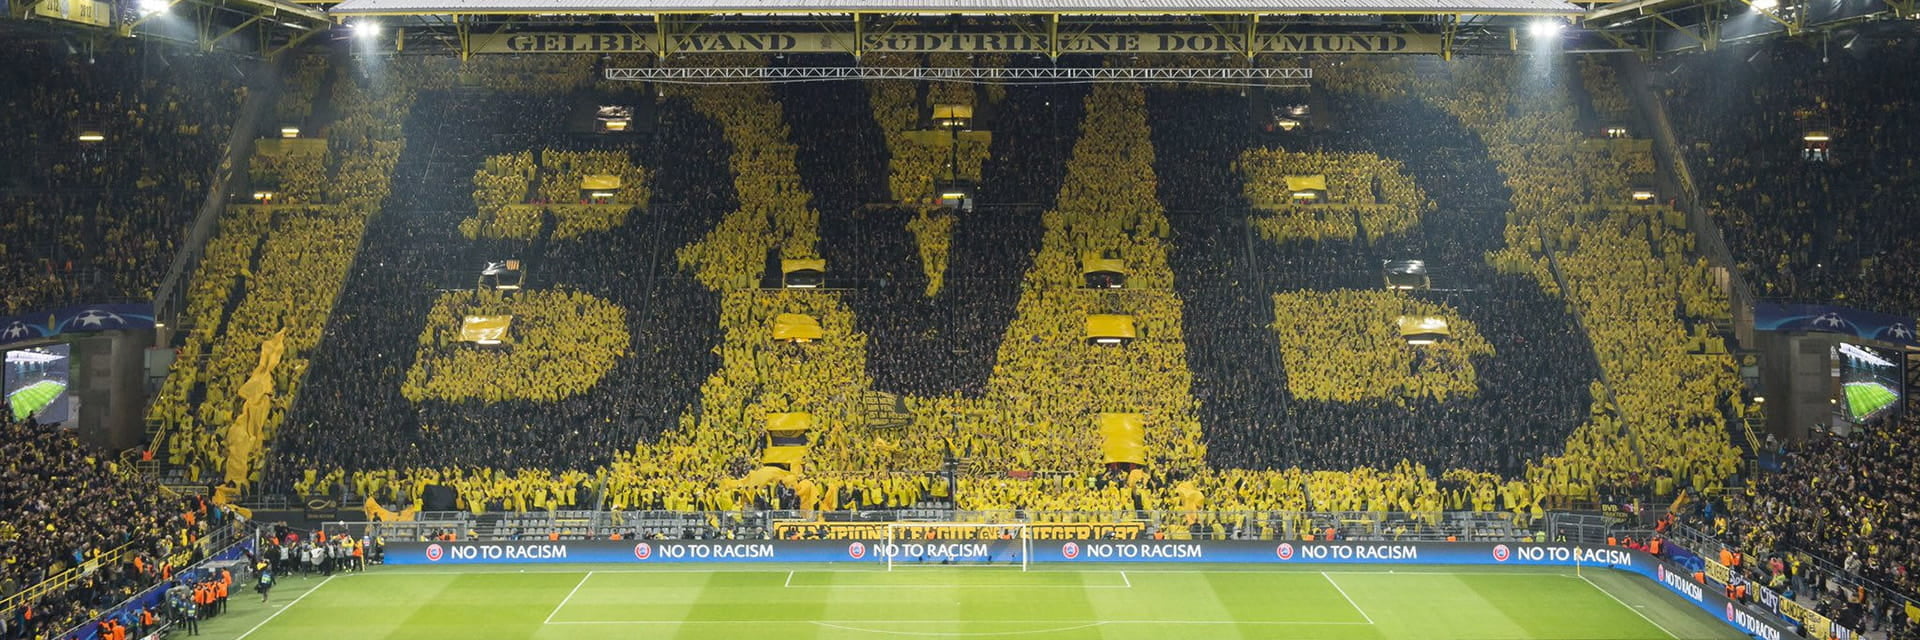 Borussia Dortmund - VfL Bochum, 6 novemberom 15:30